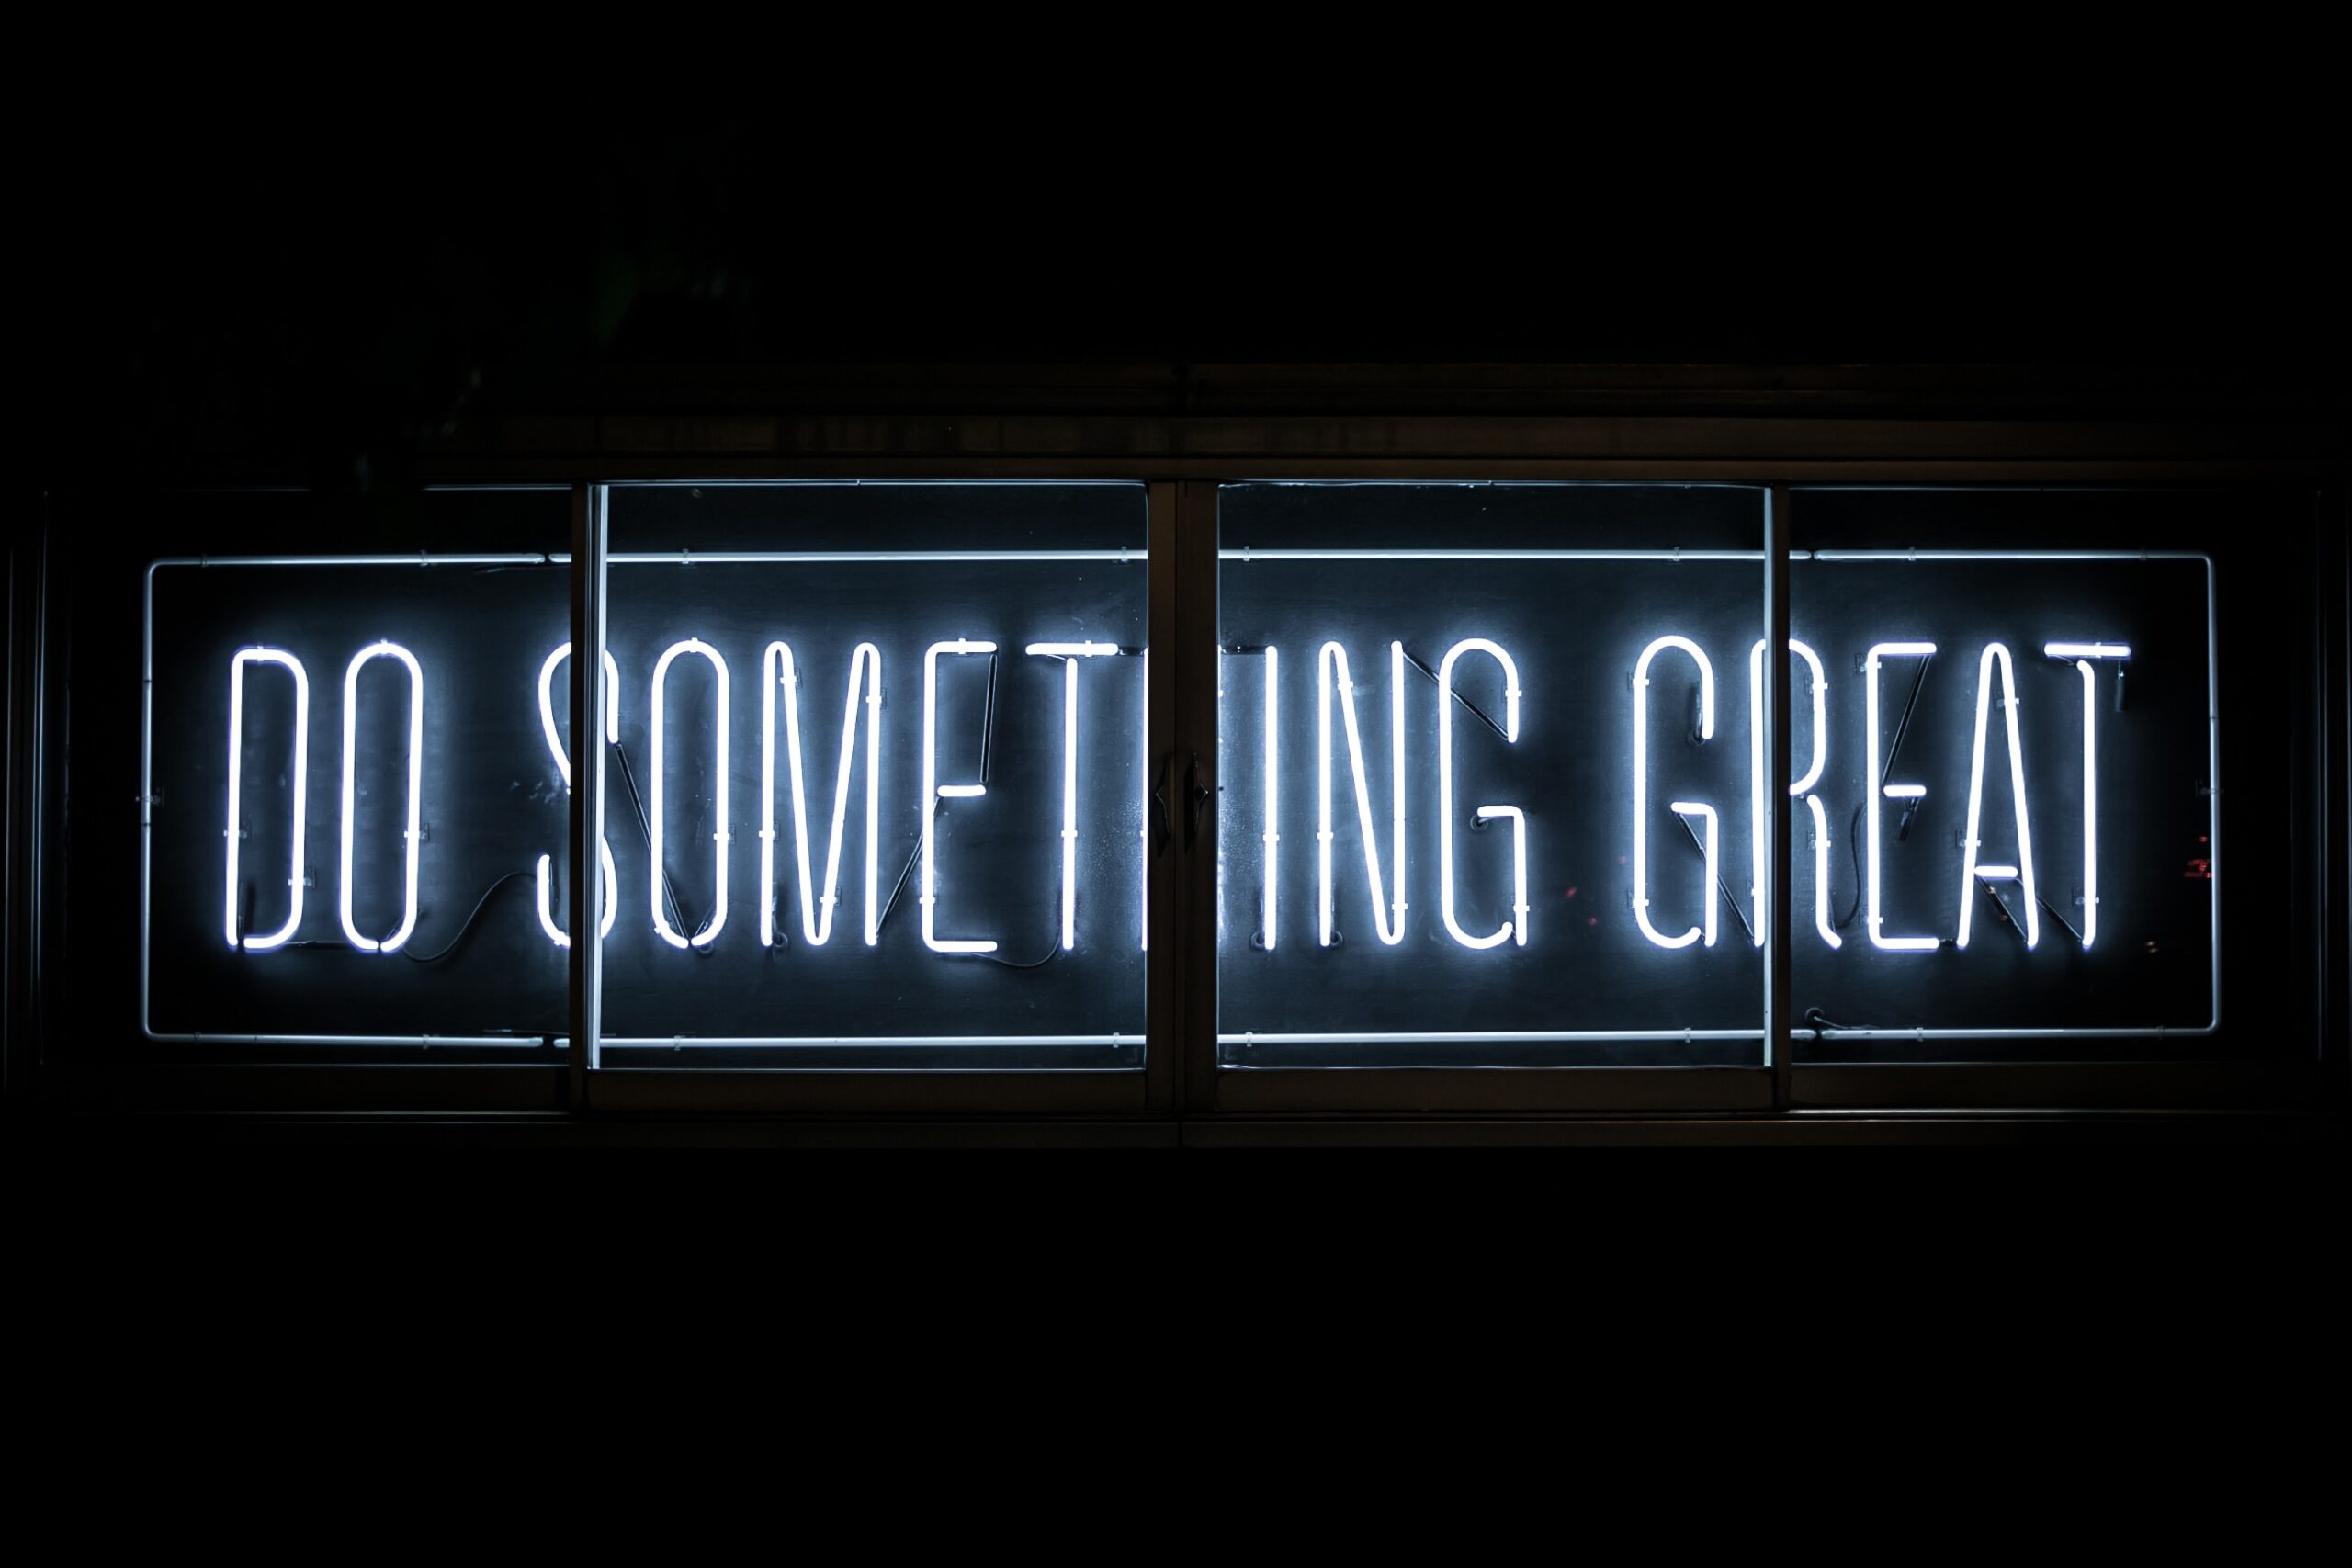 Ein Schild in der Dunkelheit, in blauem Licht steht geschrieben: DO SOMETHING GREAT